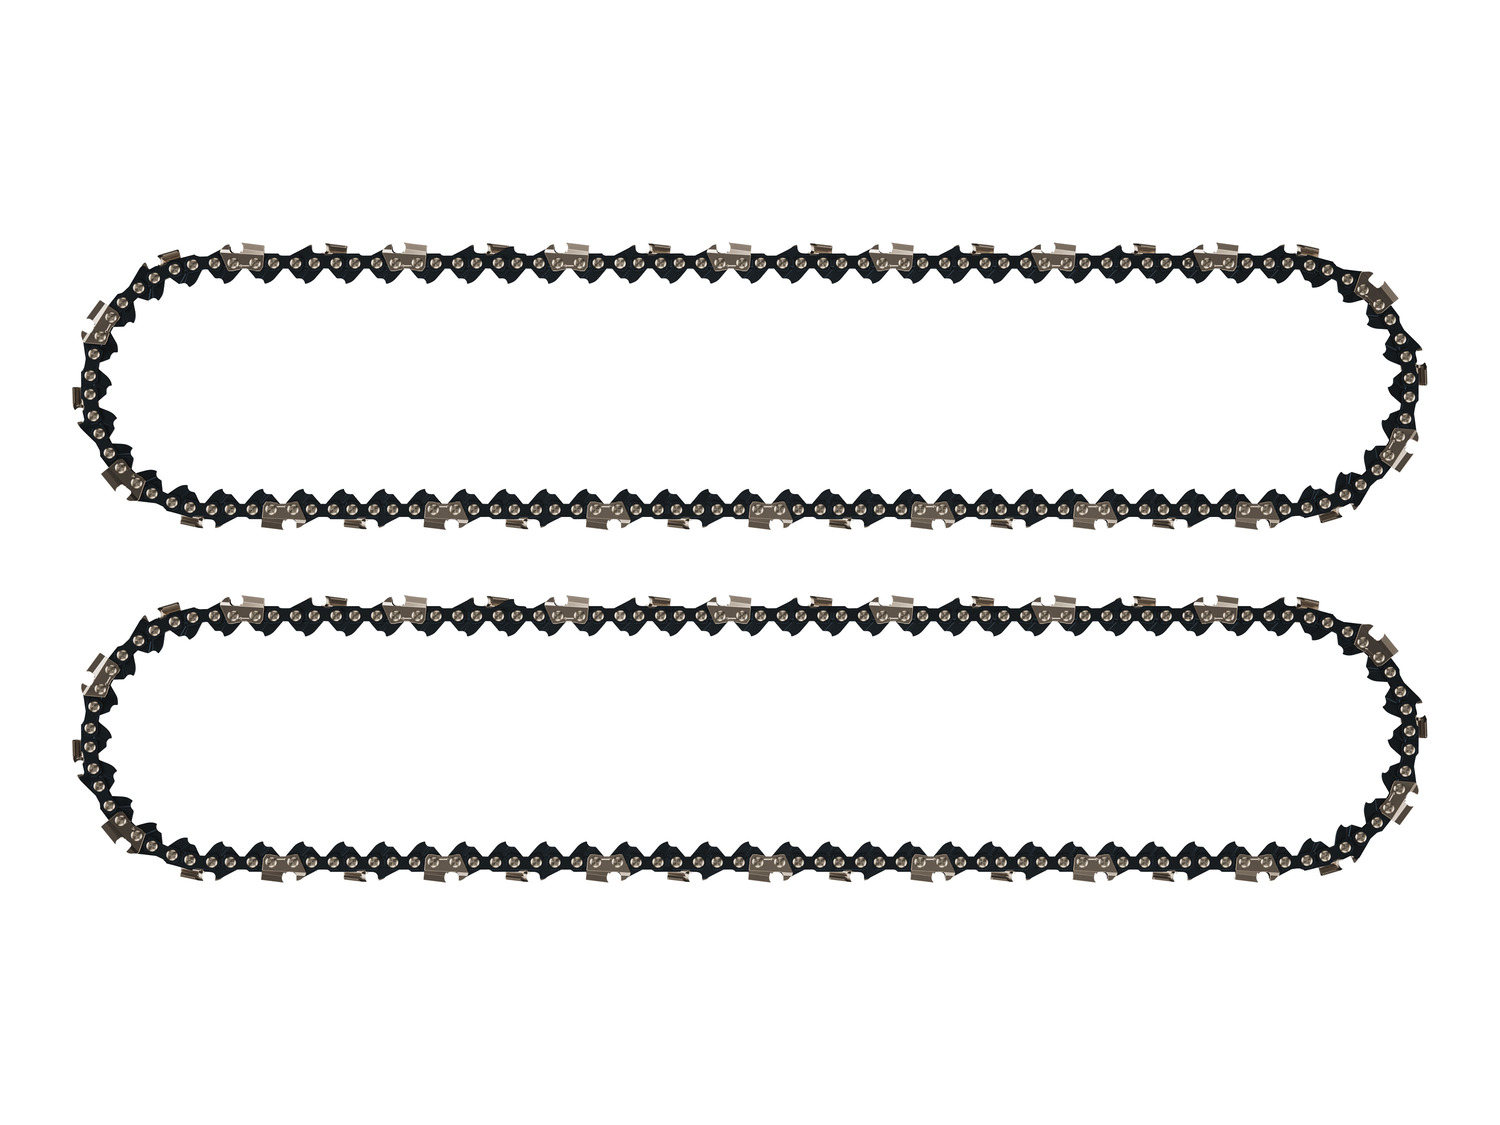 Lot de 2 chaînes 40 maillons pour tronçonneuse guide 25 cm (10 pouces)